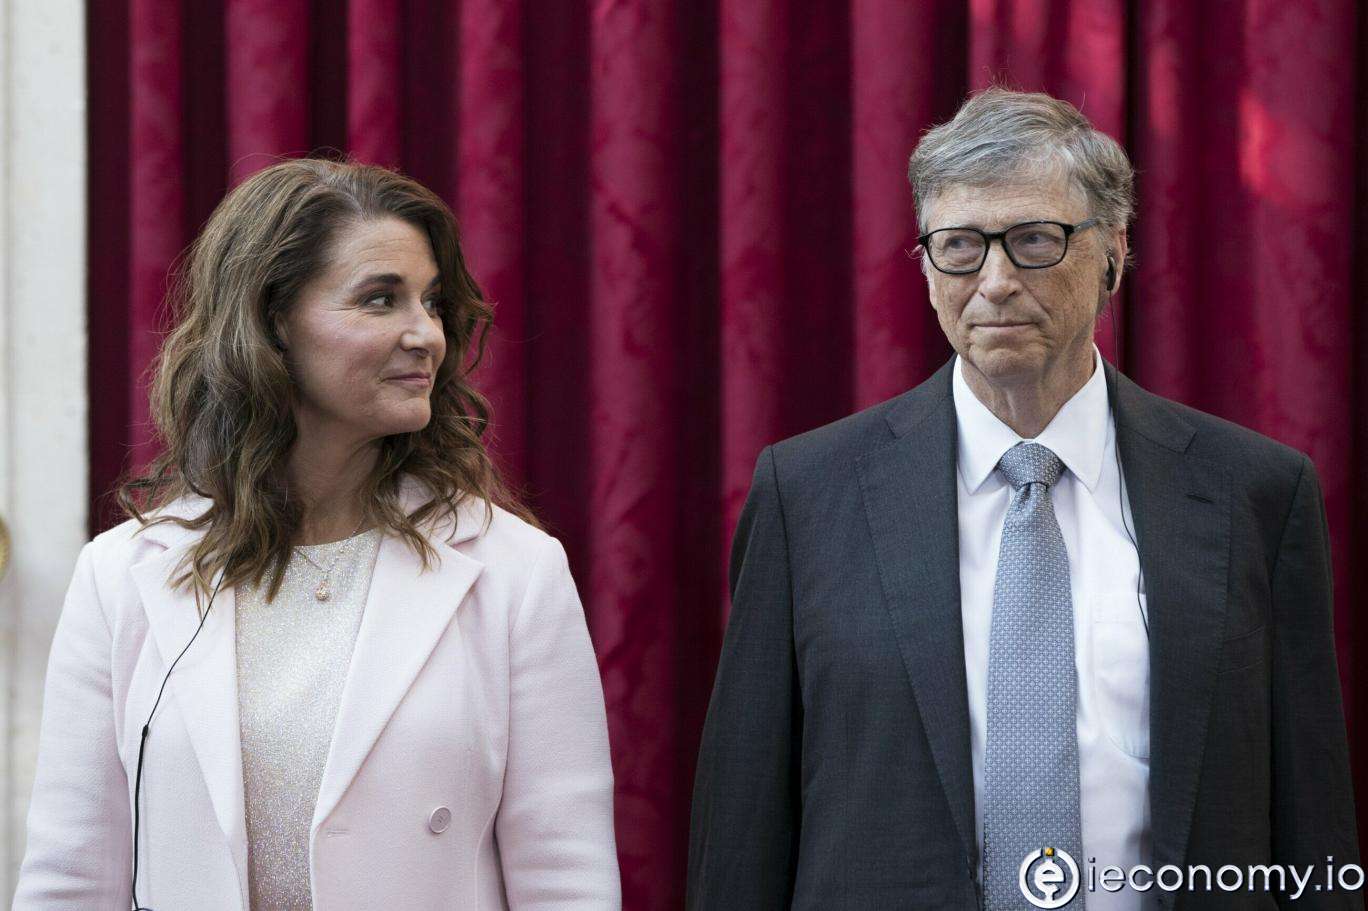 Bill Gates Announced Funding for Covid-19 Medicine